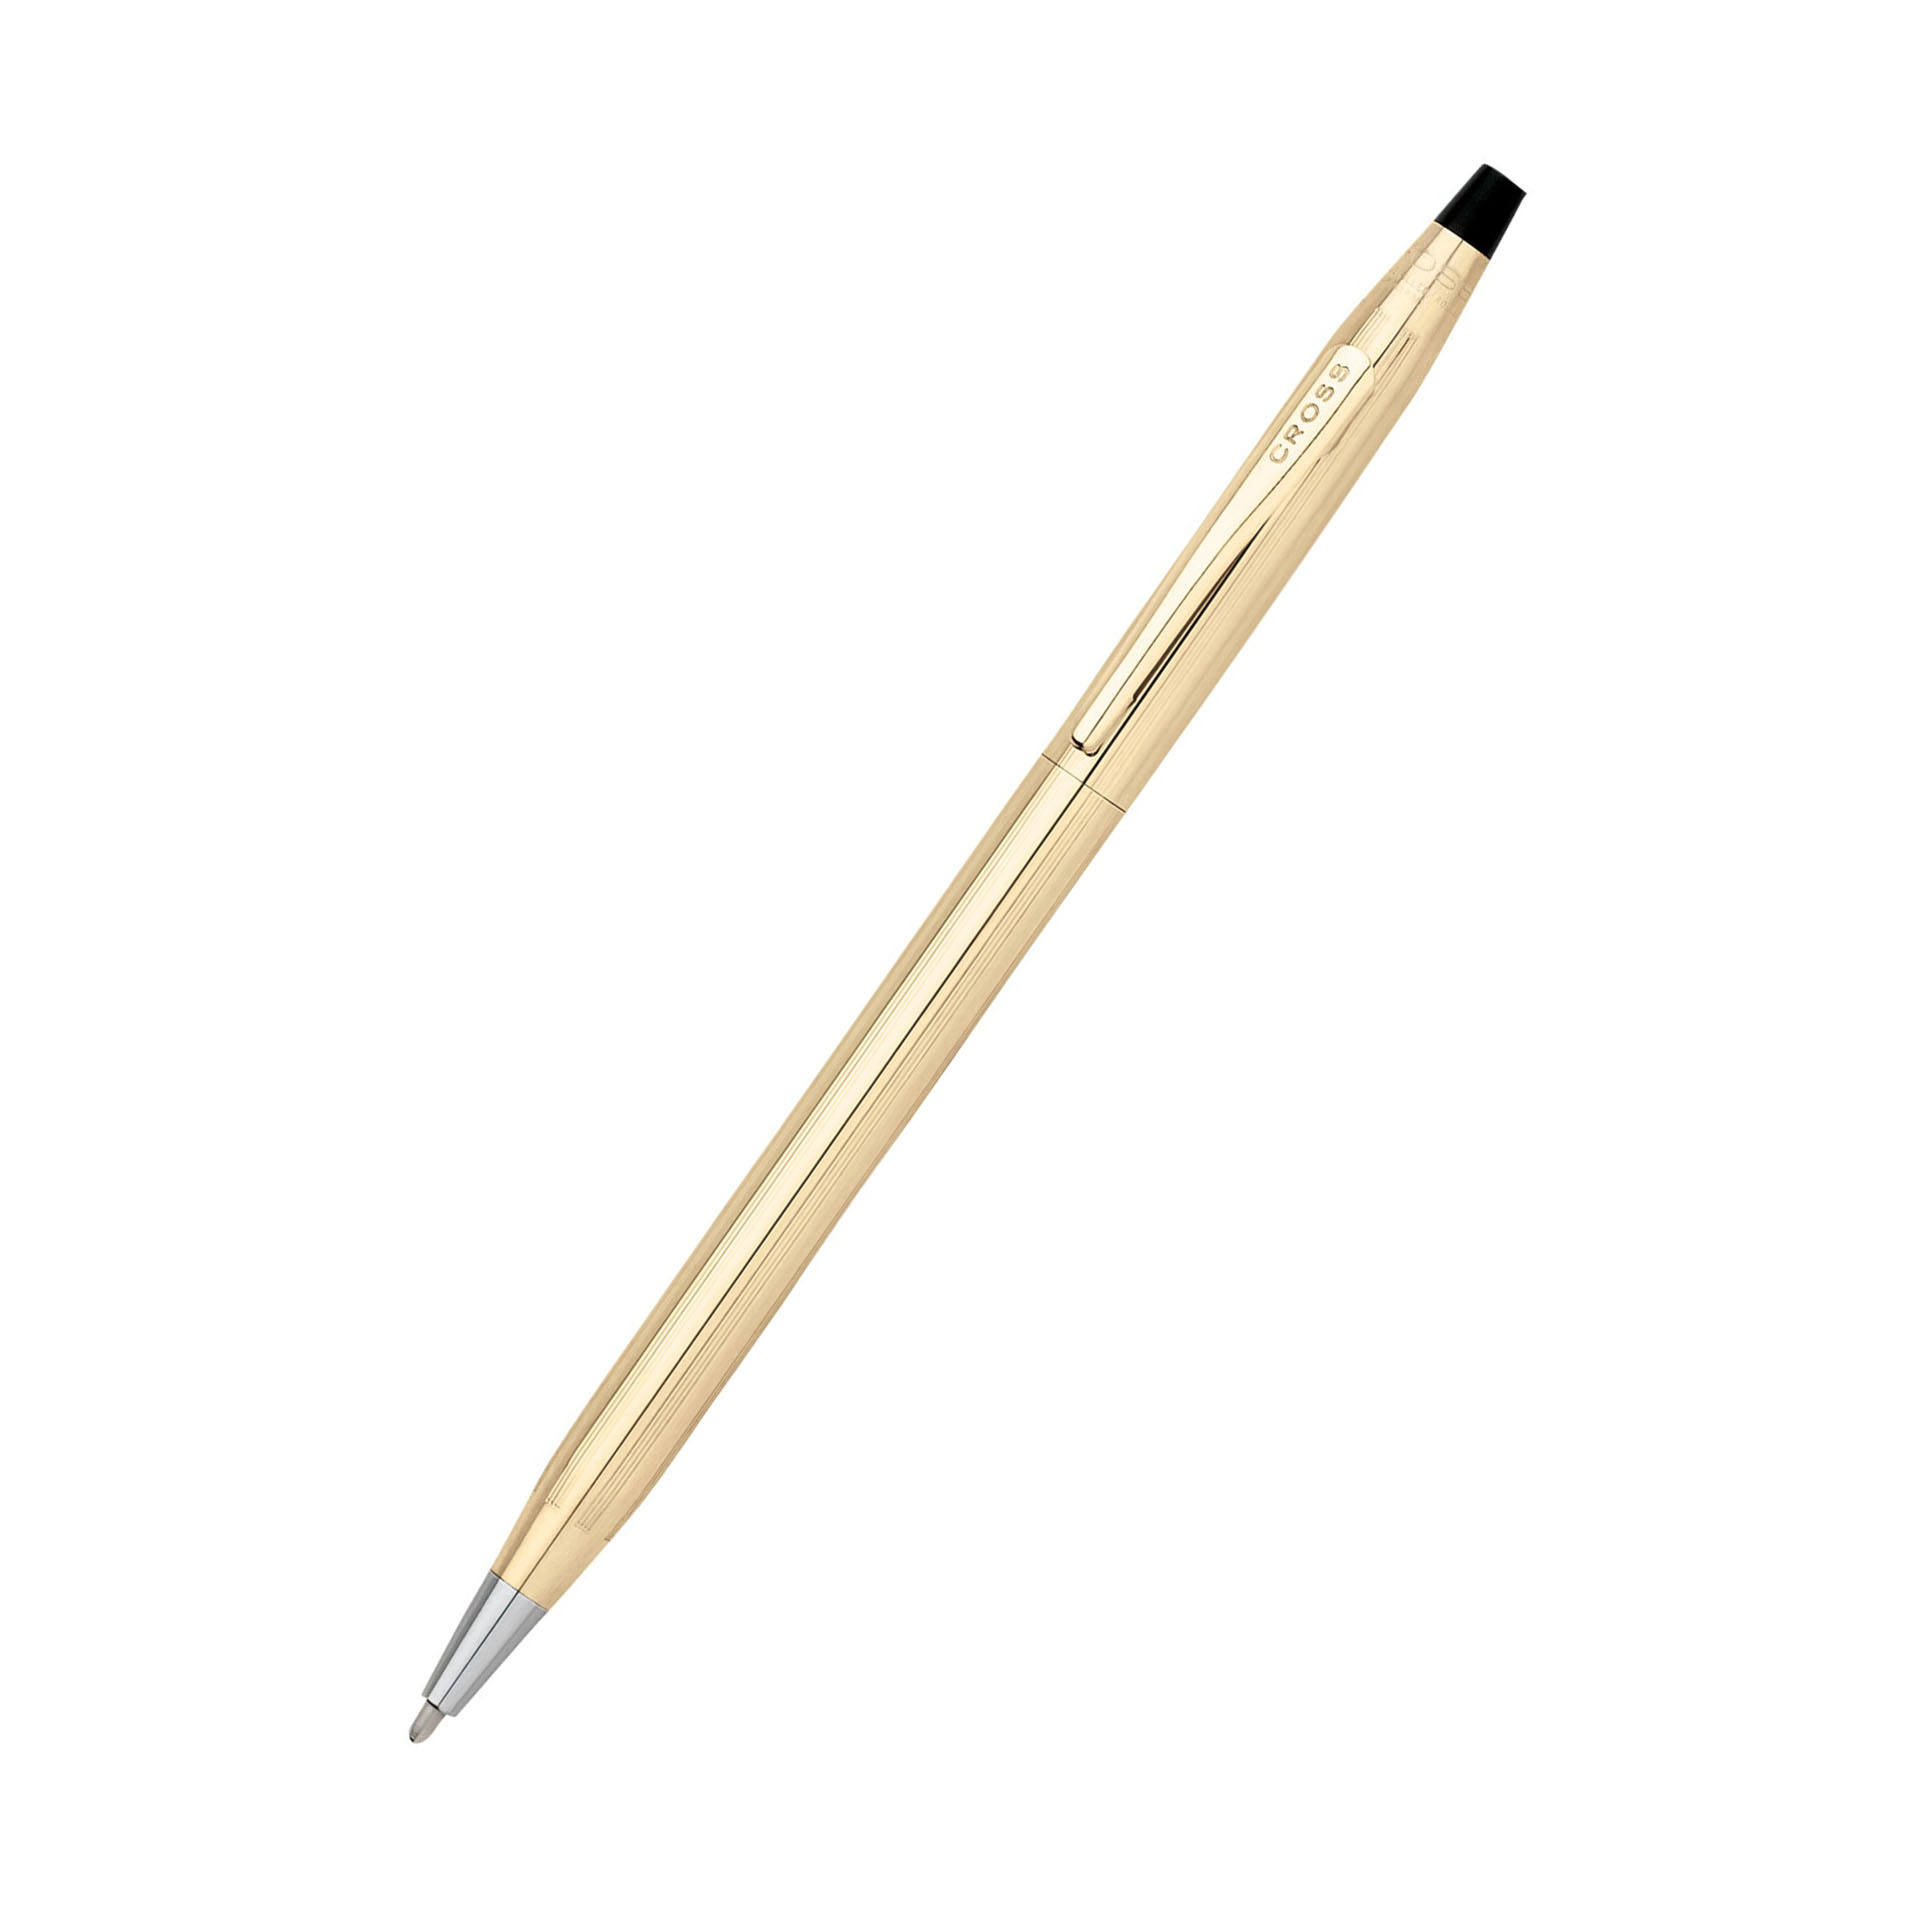 Brand New In Box Cross Century 10kt Gold Filled Ballpoint Pen 